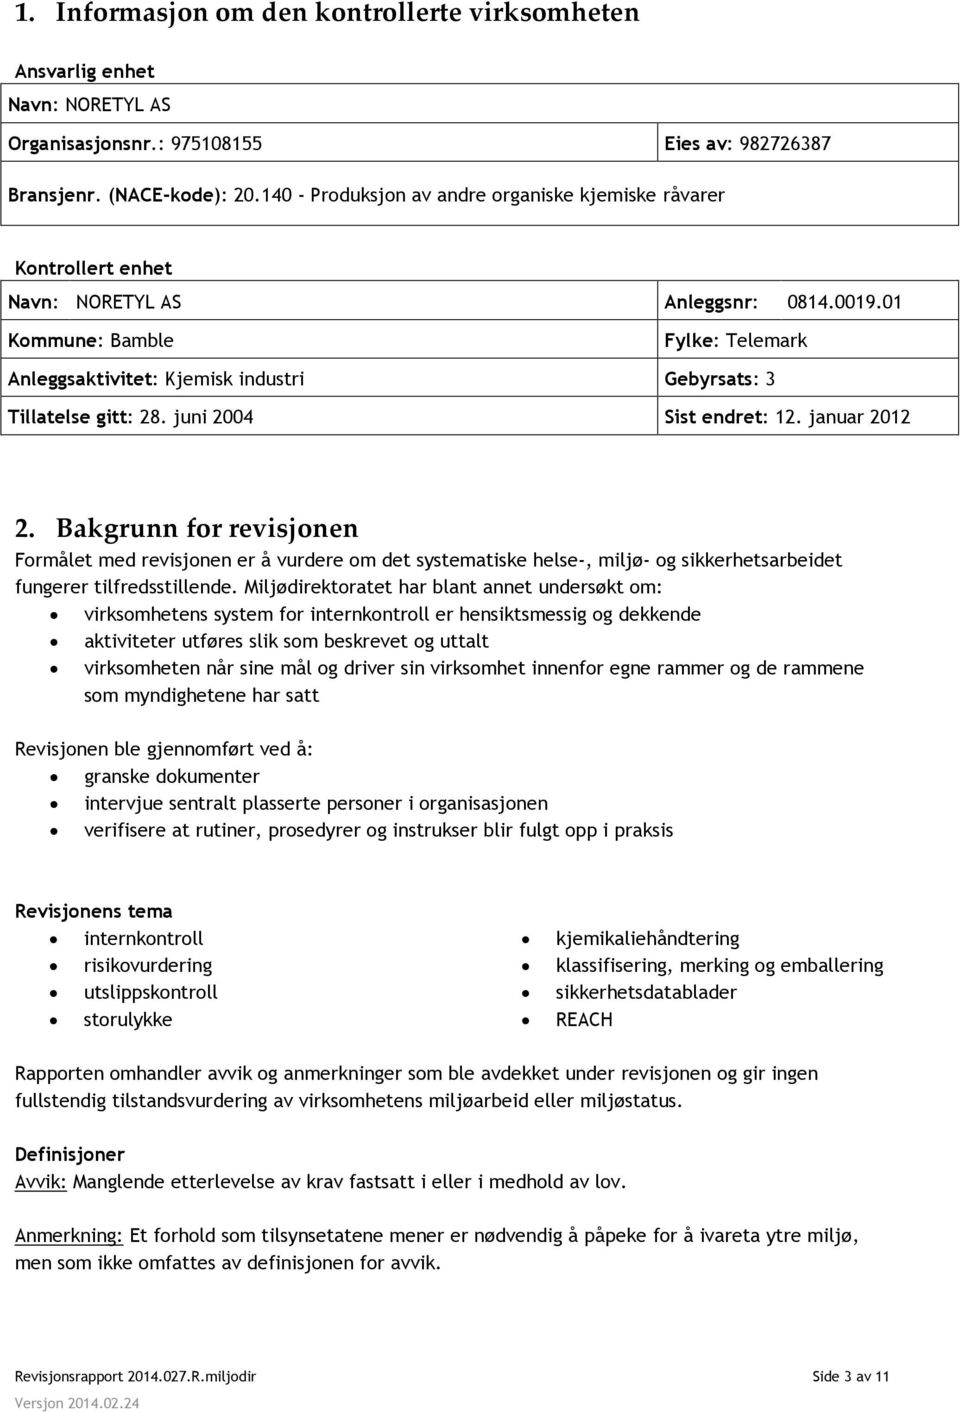 01 Kommune: Bamble Fylke: Telemark Anleggsaktivitet: Kjemisk industri Gebyrsats: 3 Tillatelse gitt: 28. juni 2004 Sist endret: 12. januar 2012 2.